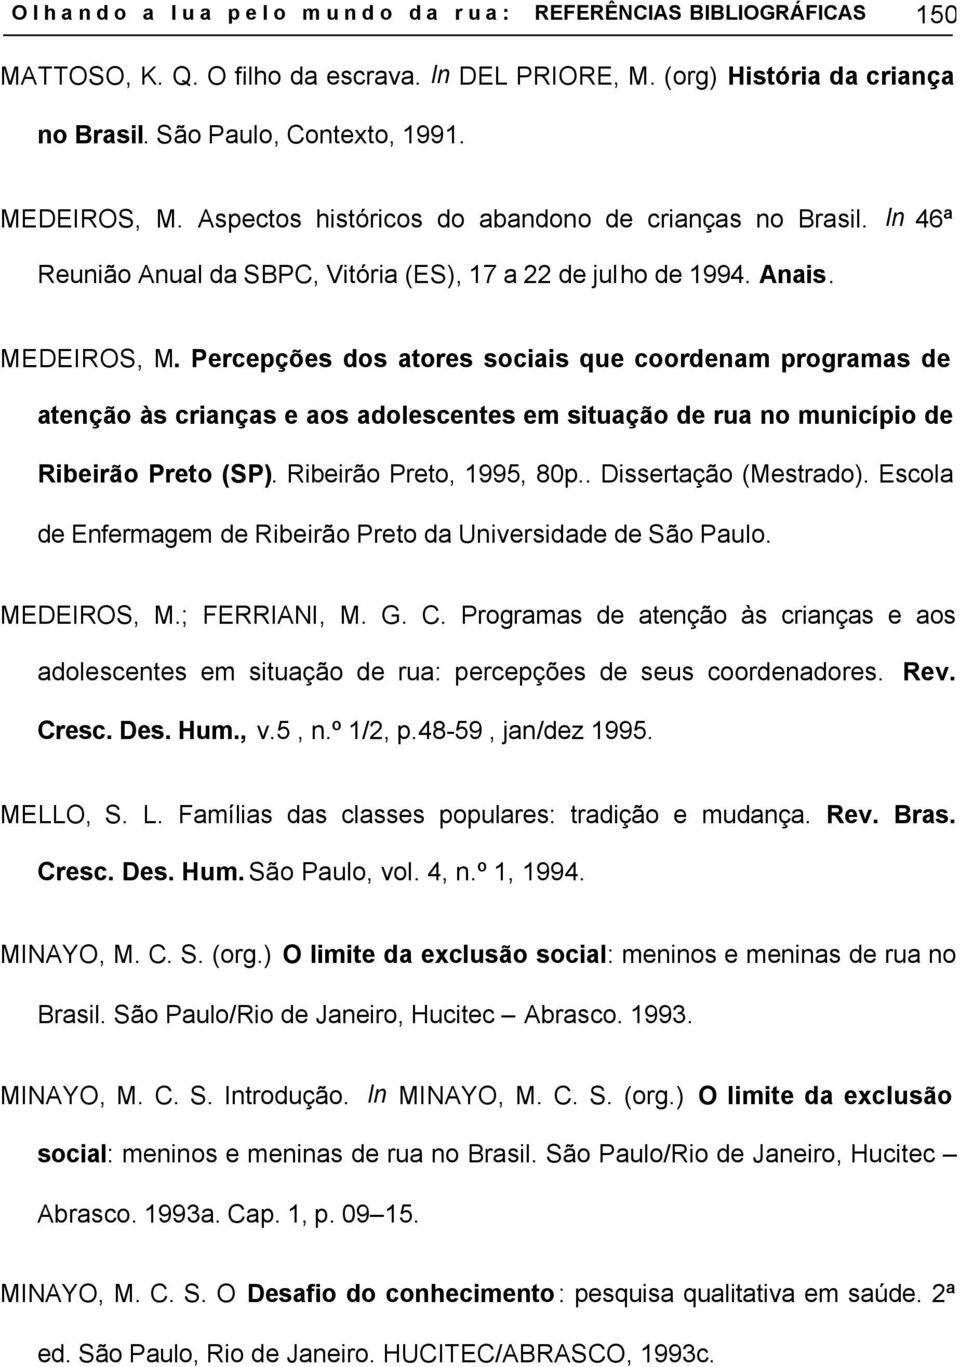 Percepções dos atores sociais que coordenam programas de atenção às crianças e aos adolescentes em situação de rua no município de Ribeirão Preto (SP). Ribeirão Preto, 1995, 80p.